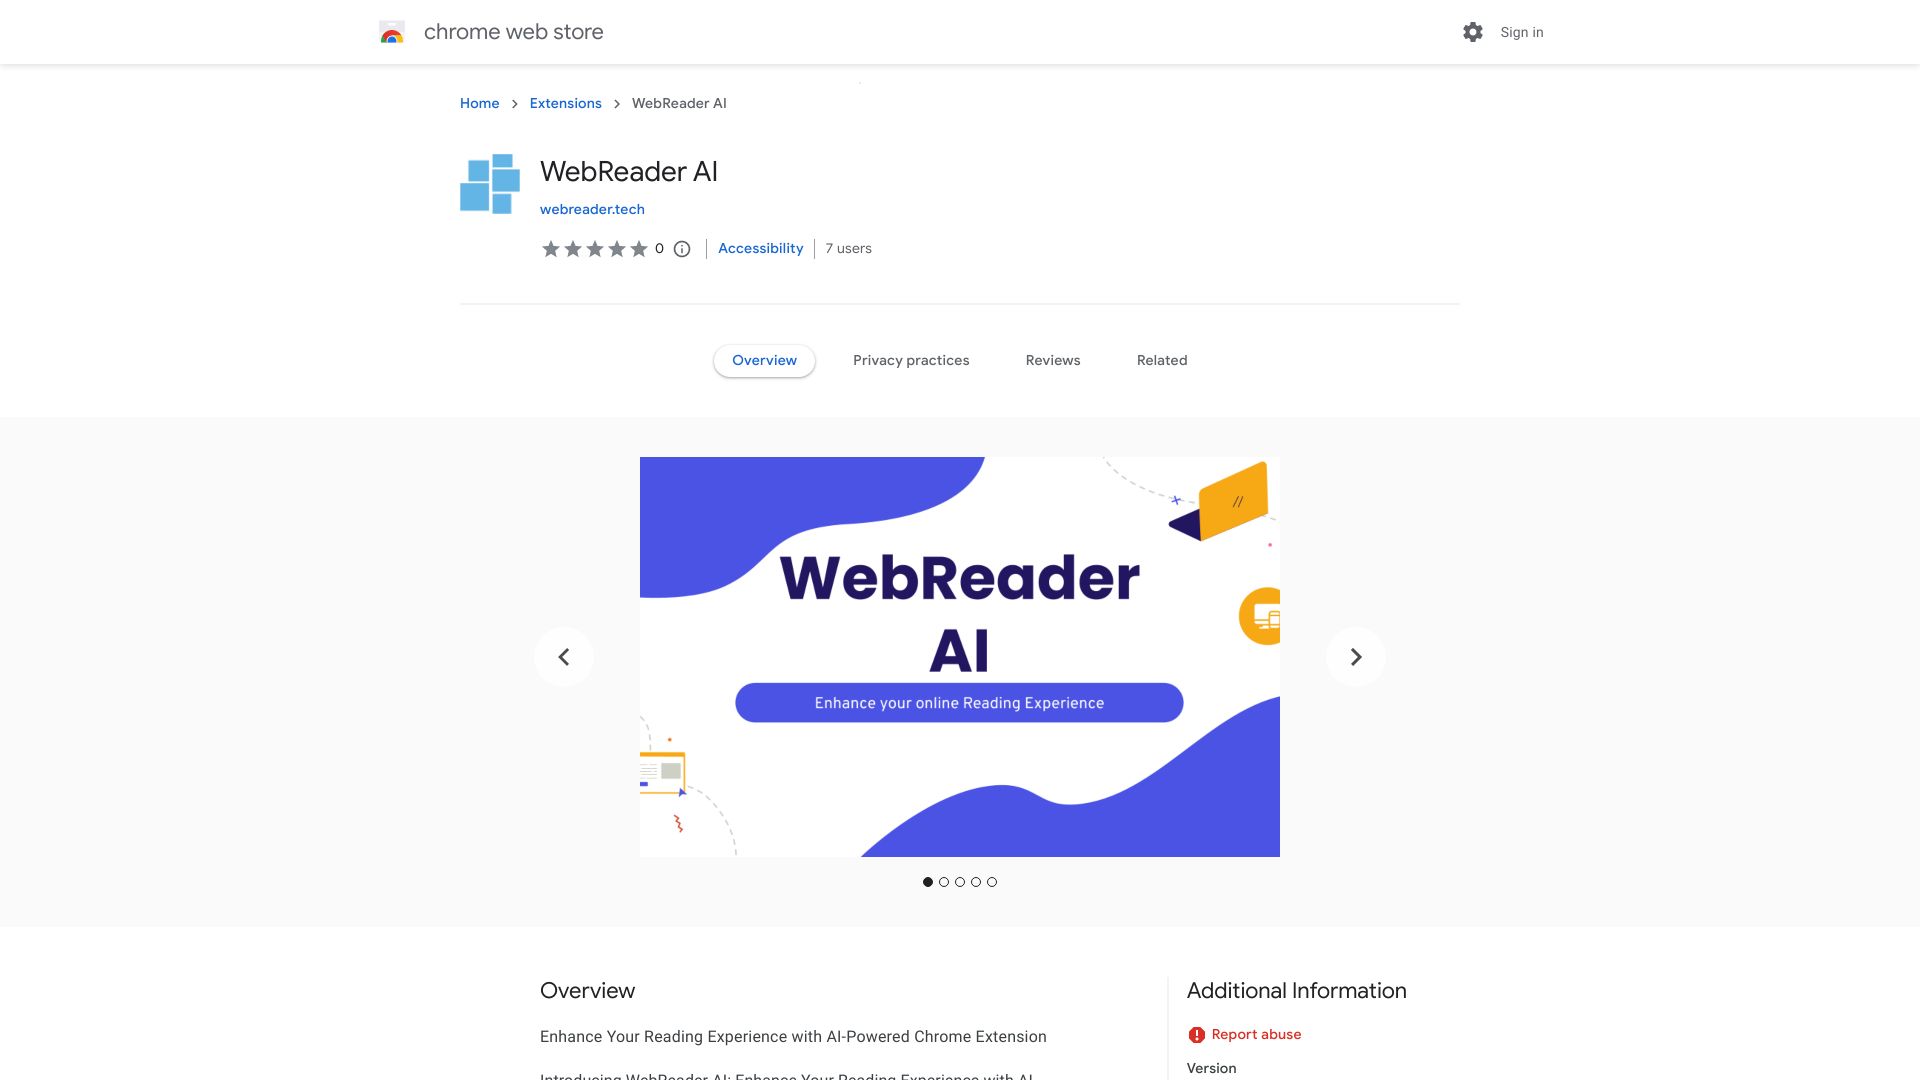 WebReader AI